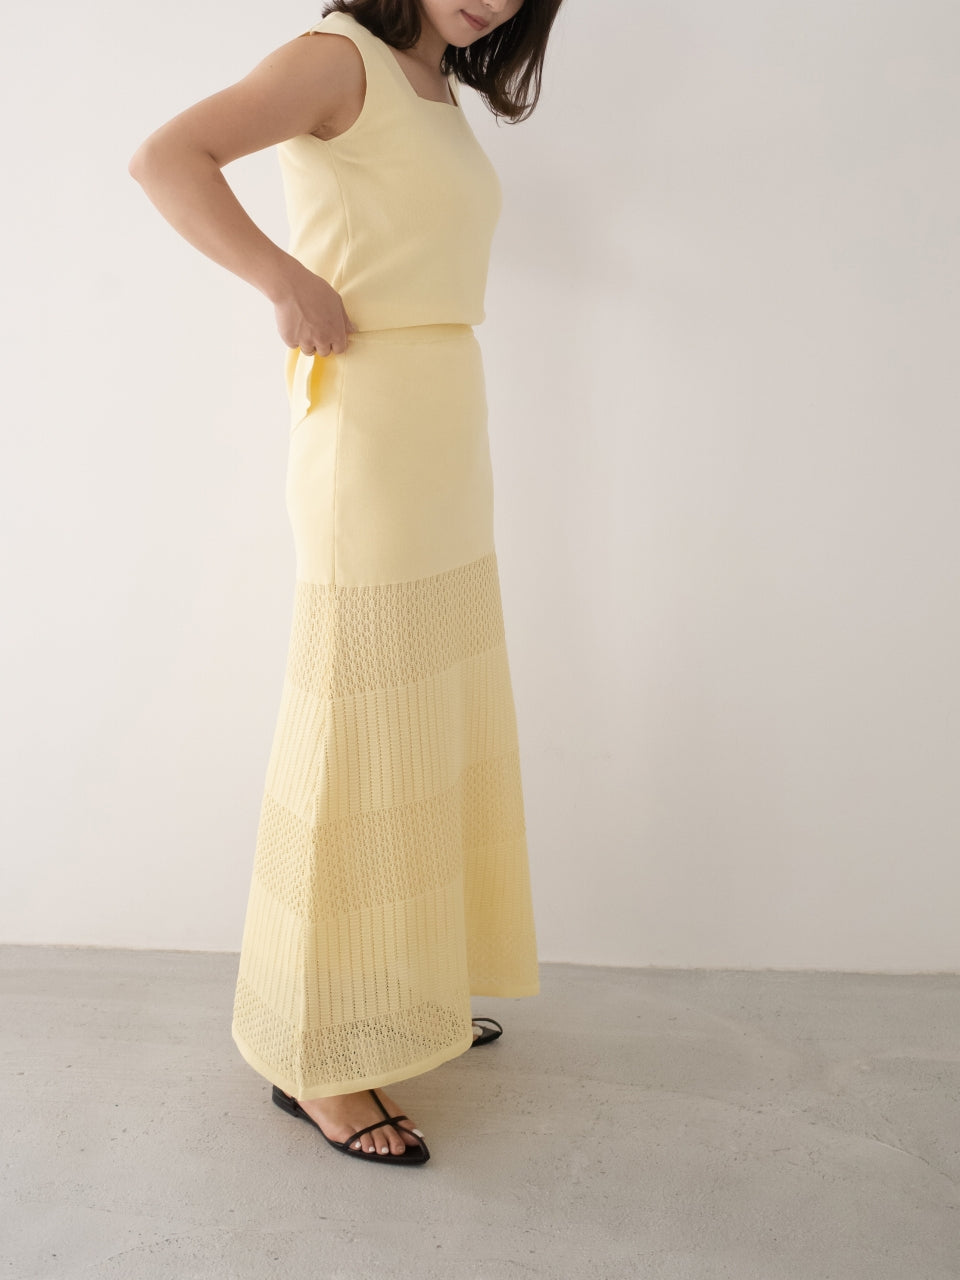 夏にぴったりイエロー（黄色）スカートニット素材で伸縮性に優れた人気のロングスカートです。